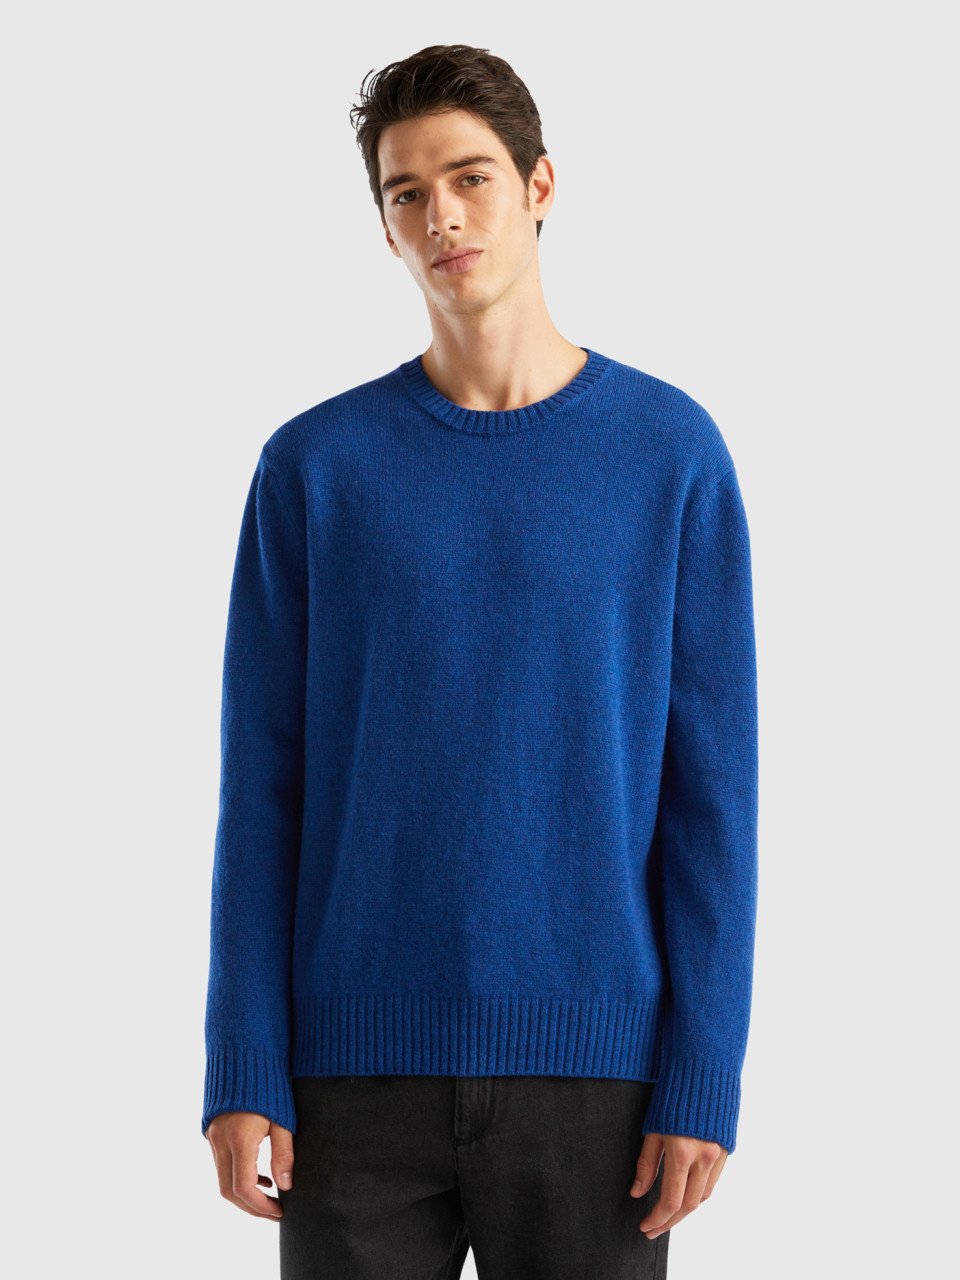 Benetton, Sweater In Shetland Wool, Bright Blue, Men